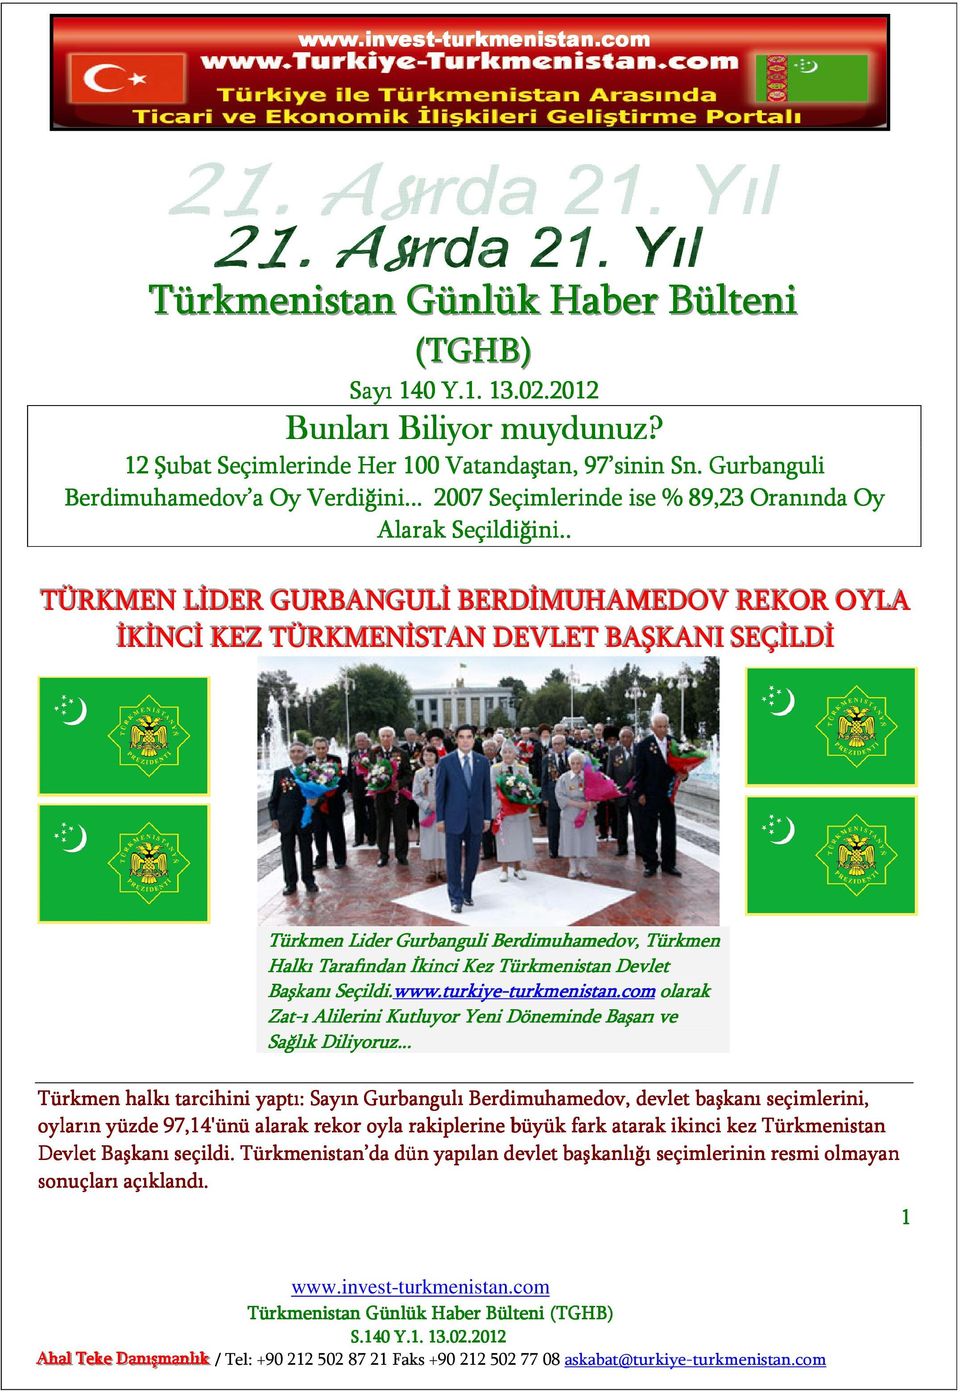 . TÜRKMEN LİDER GURBANGULİ BERDİMUHAMEDOV REKOR OYLA İKİNCİ KEZ TÜRKMENİSTAN DEVLET BAŞKANI SEÇİLDİ Türkmen Lider Gurbanguli Berdimuhamedov, Türkmen Halkı Tarafından İkinci Kez Türkmenistan Devlet